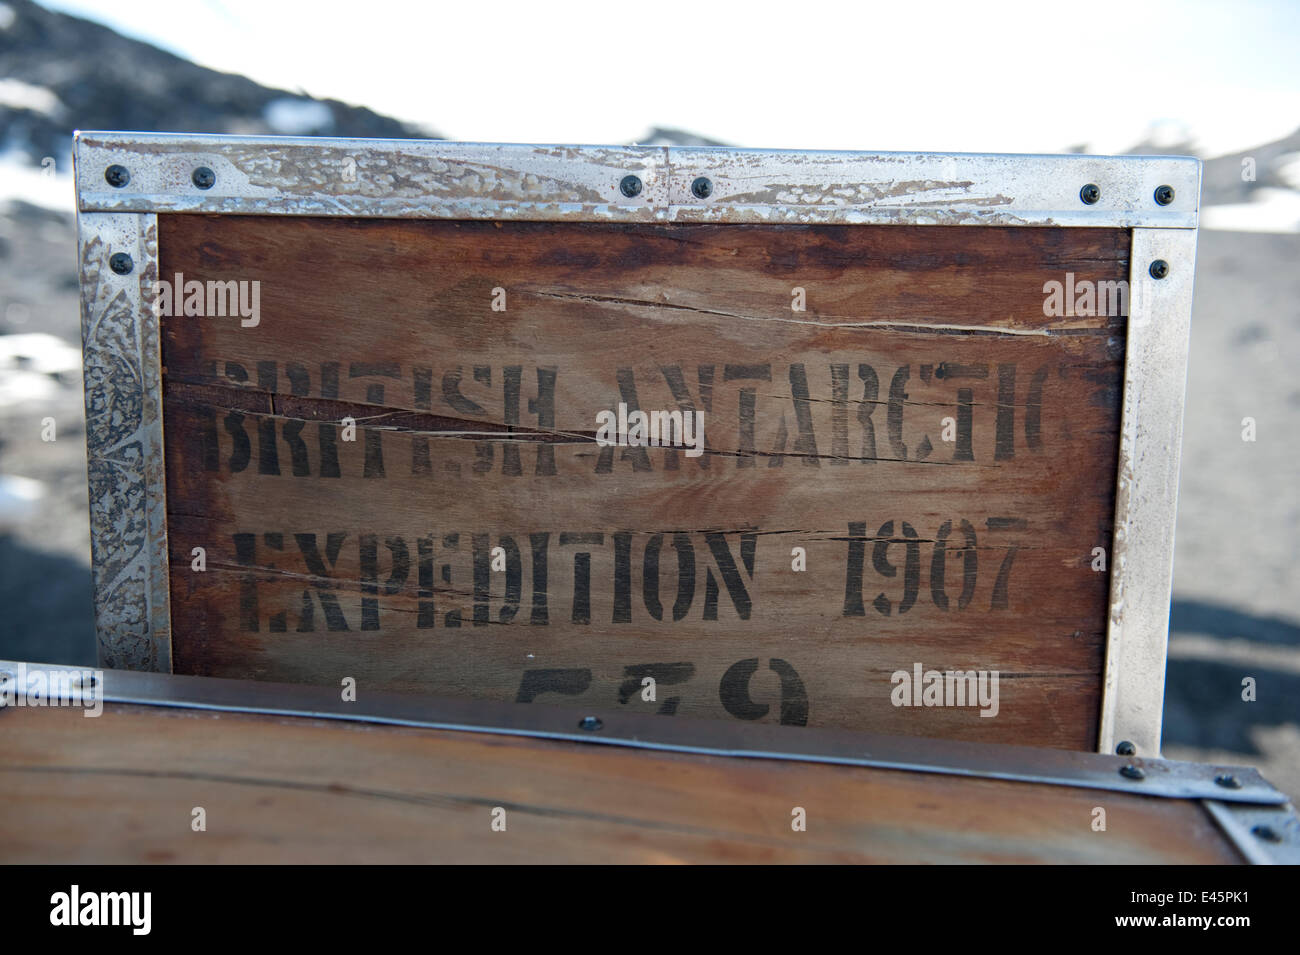 Verpackung-Holzkisten außerhalb Shackletons Nimrod Hütte, eingefroren in der Zeit vom British Antarctic Expedition 1907, Kap Royds, McMurdo-Sund, Antarktis, November 2008 Stockfoto